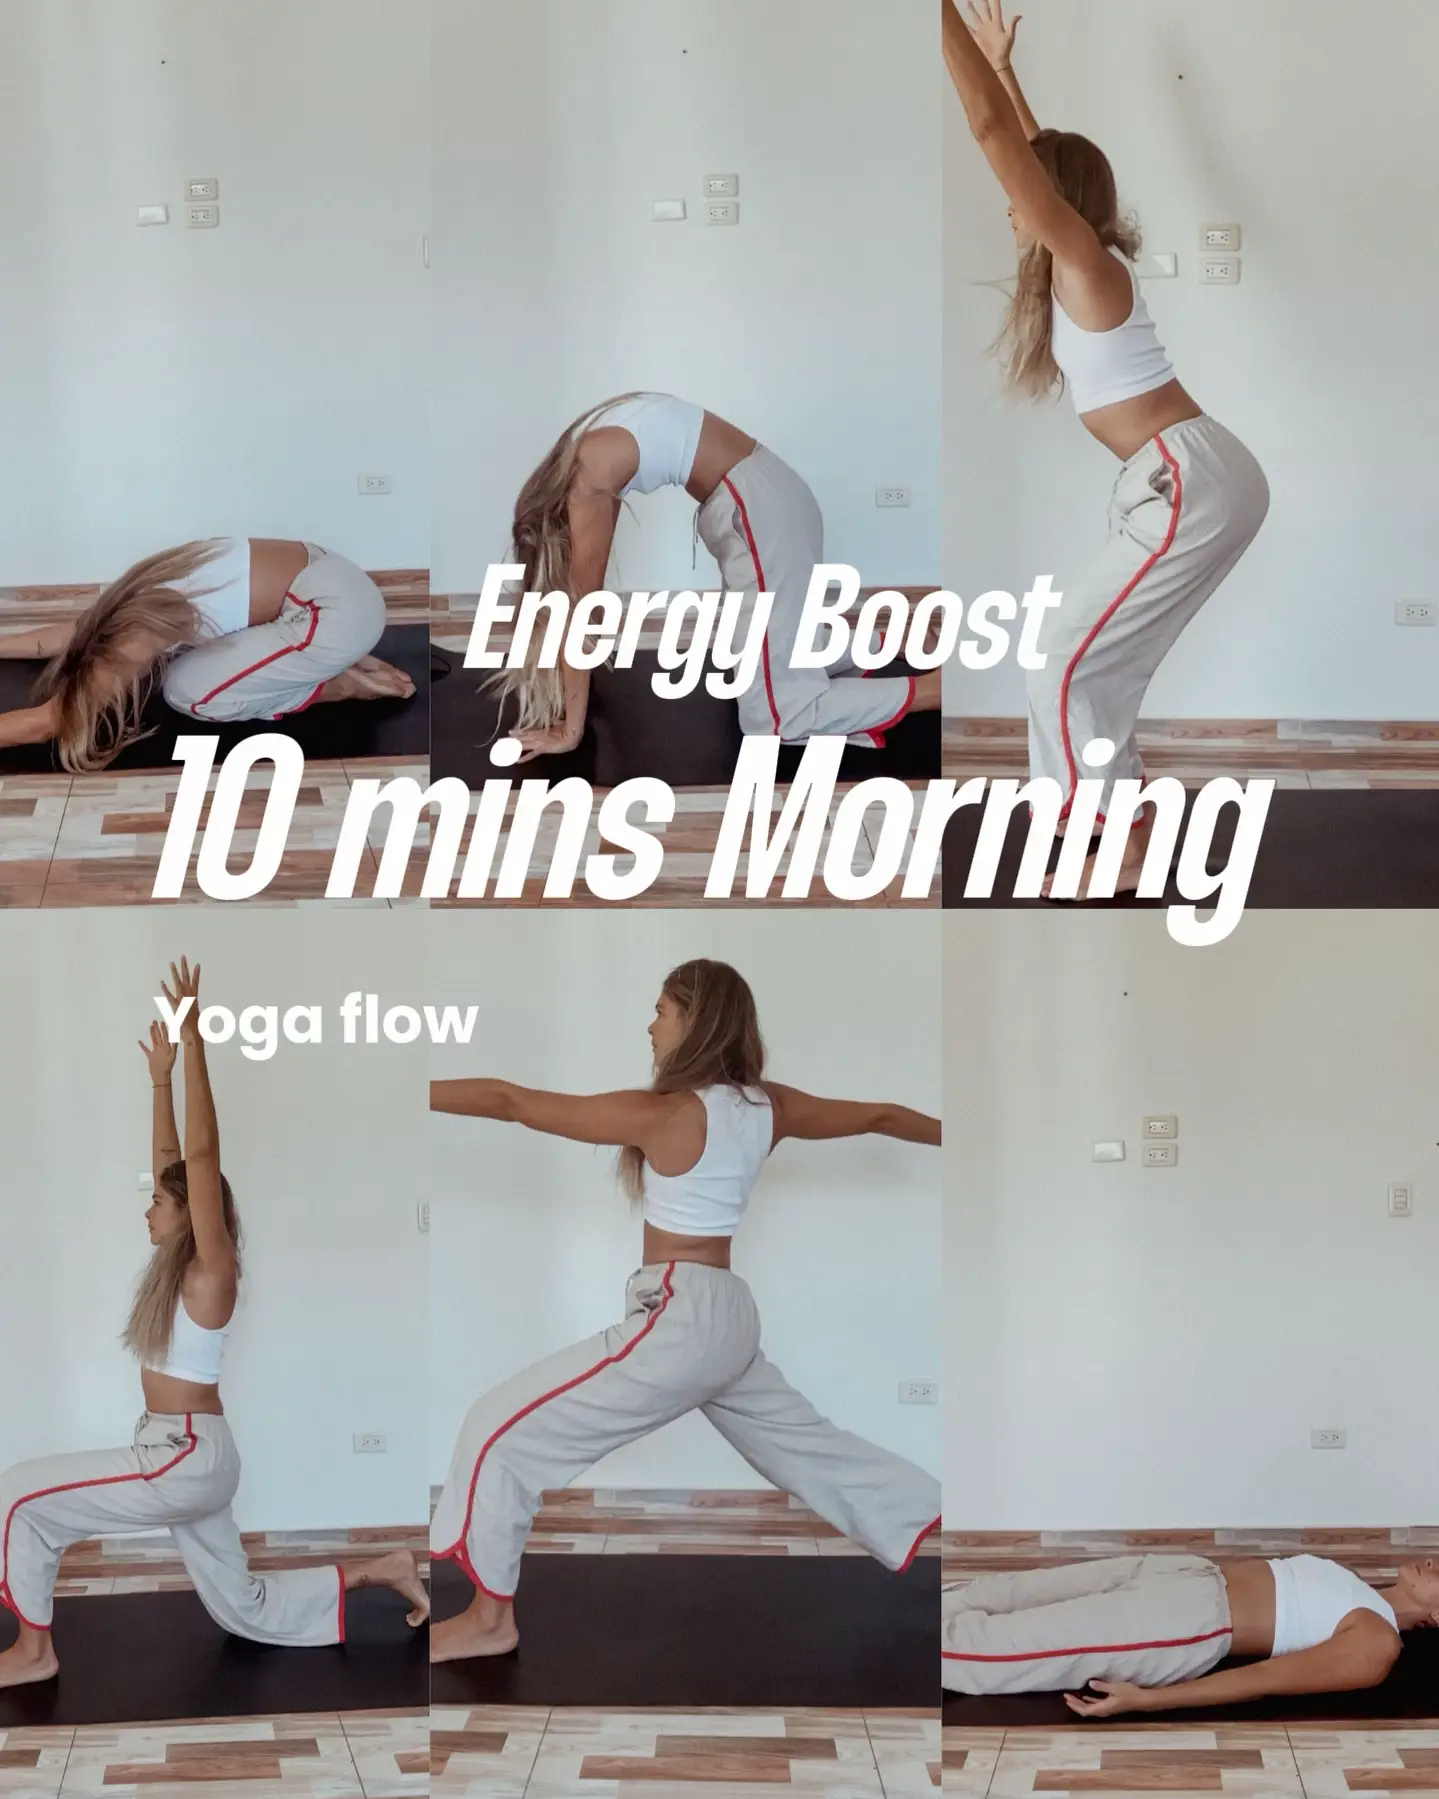 Energizing Yoga poses PDF  Energizing yoga poses, Yoga poses, Energizing  yoga